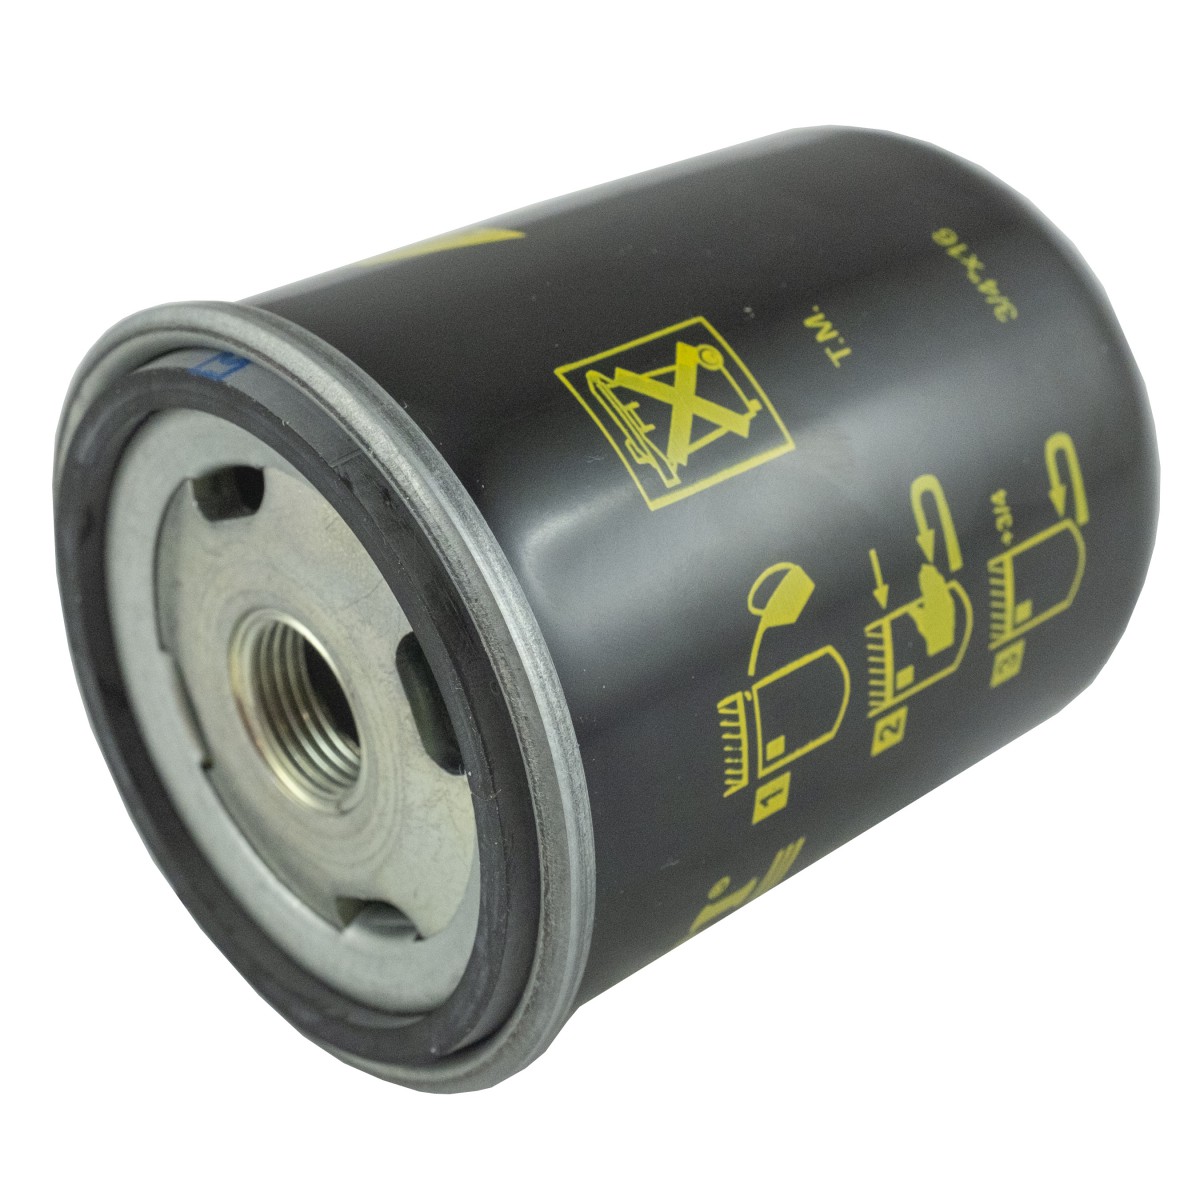 Hydraulic oil filter 3/4 "-16UNF, 104 x 80mm, John Deere 3036E, Yanmar 3TNV84-VX-JT3 gearbox